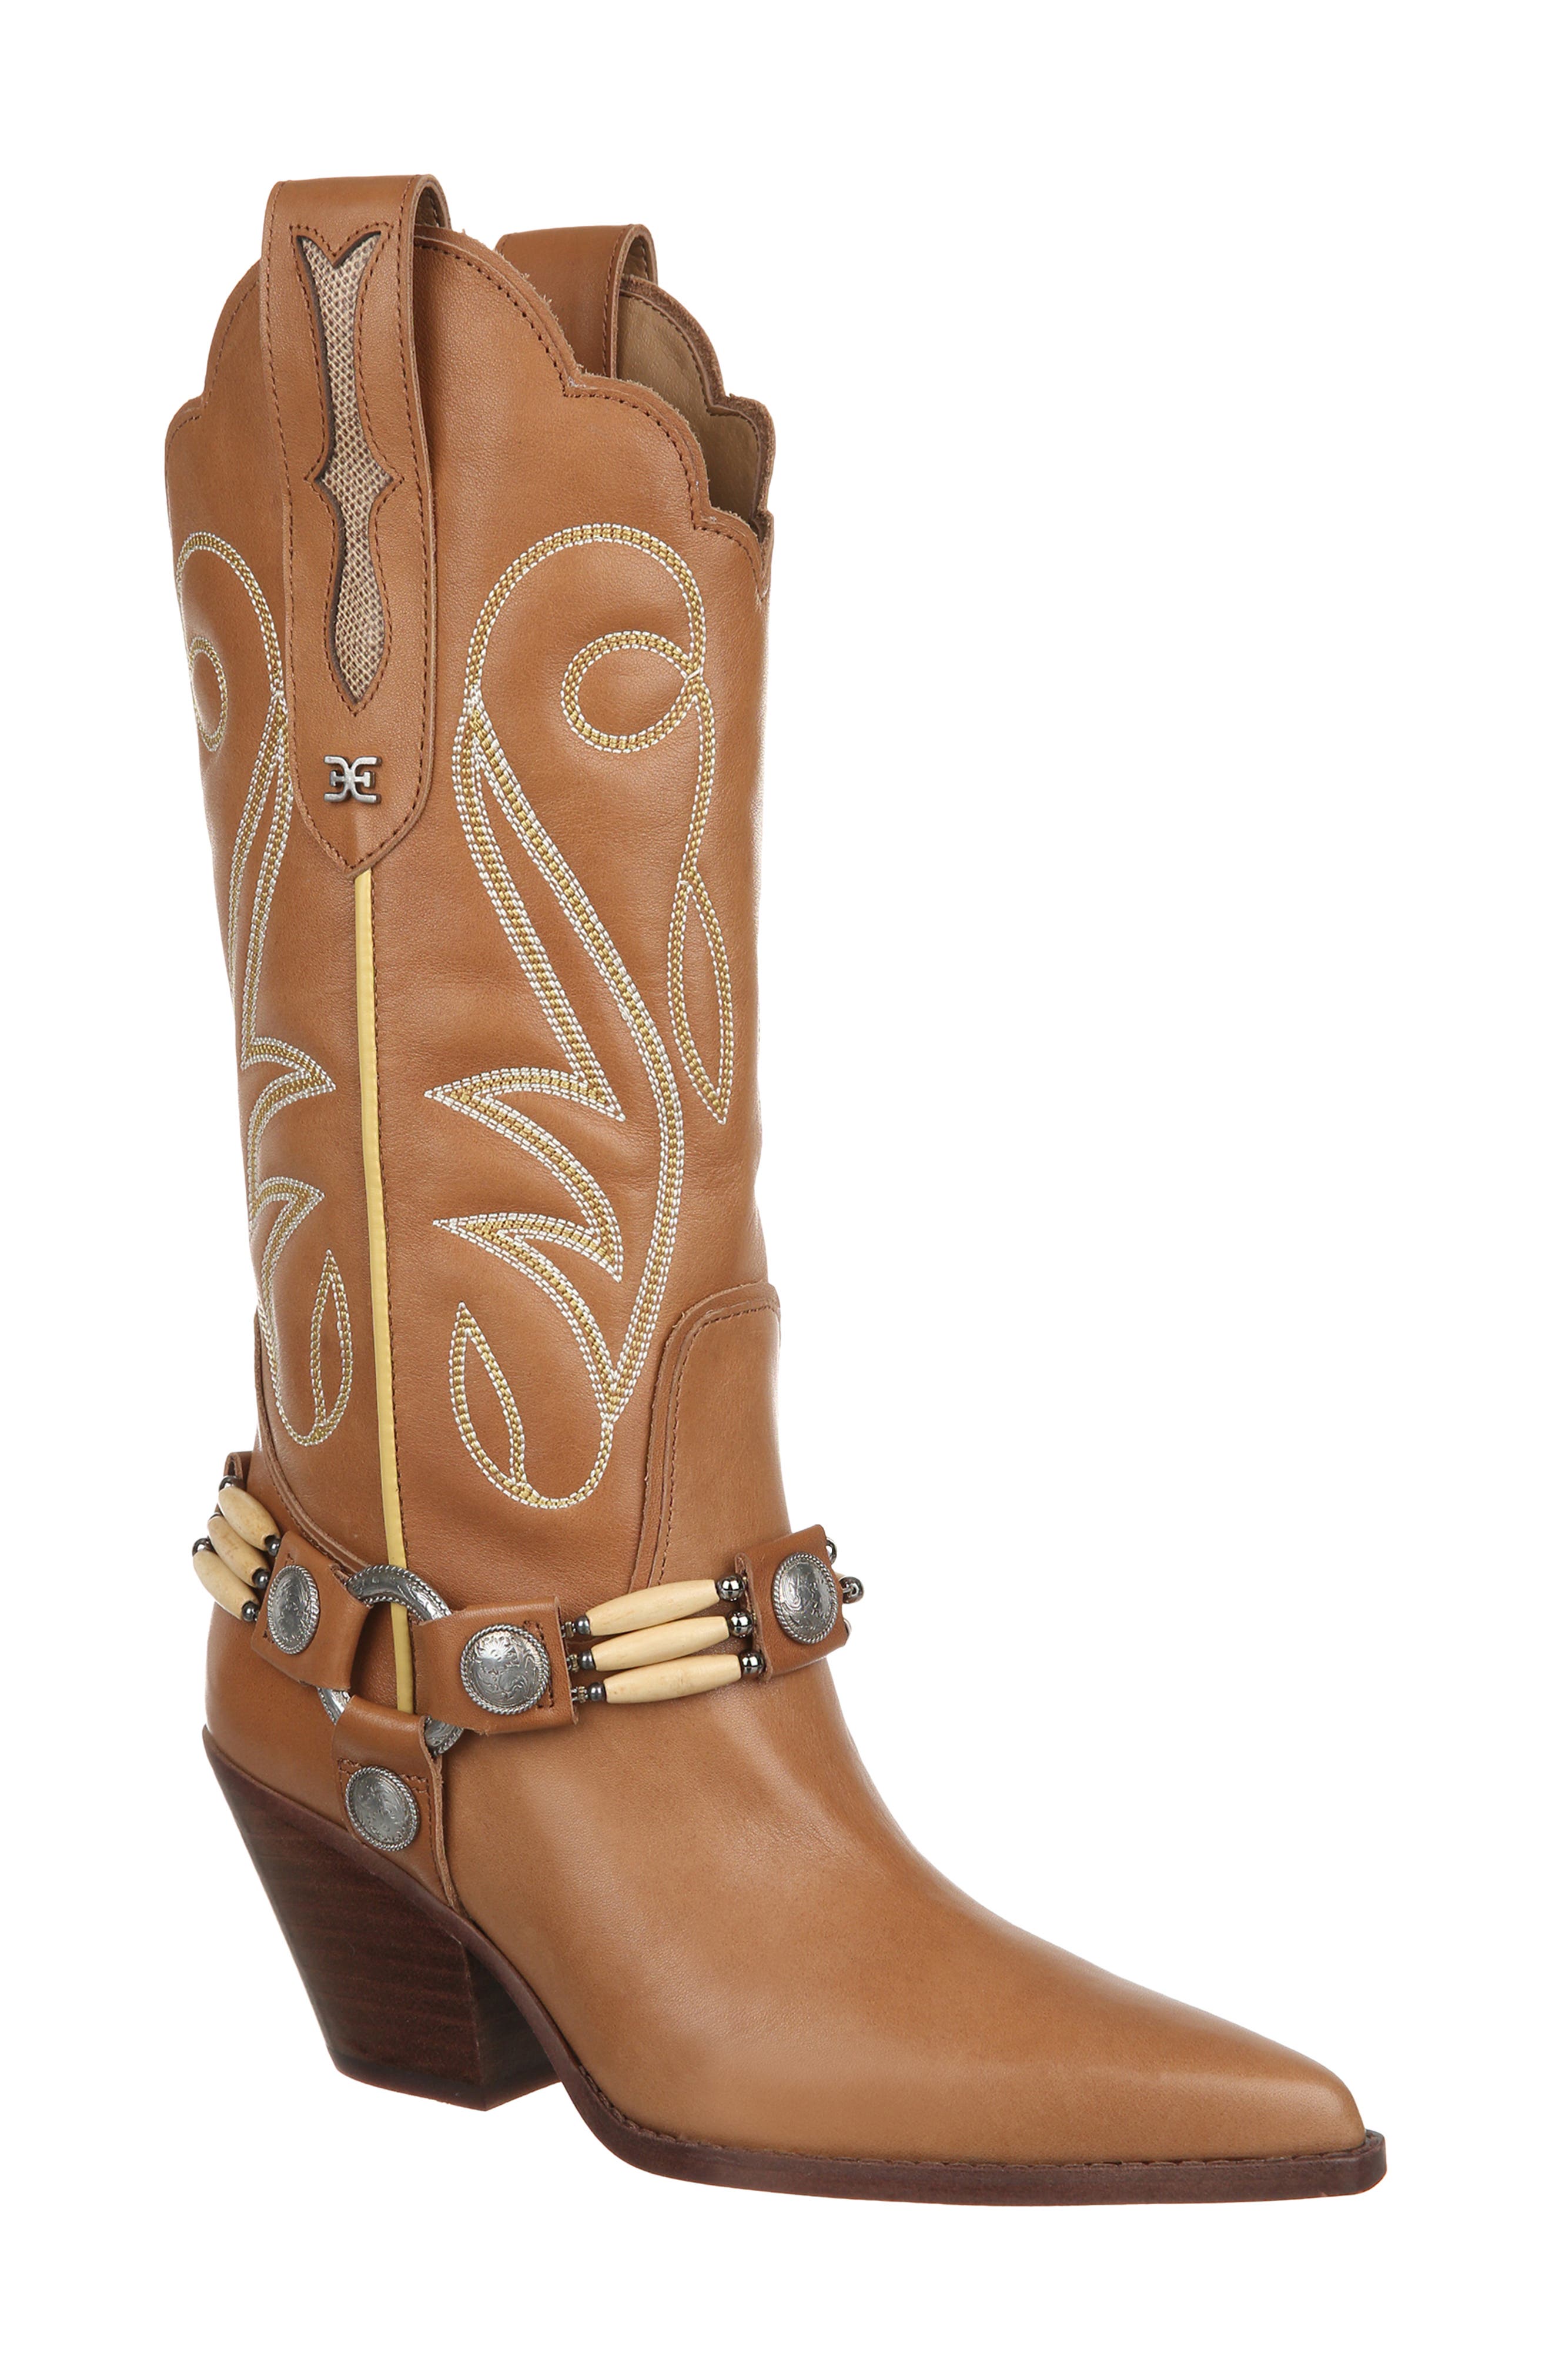 Oxygen Rhone Womens Ladies Brown Zip Mid Calf Boots Size 4-8 